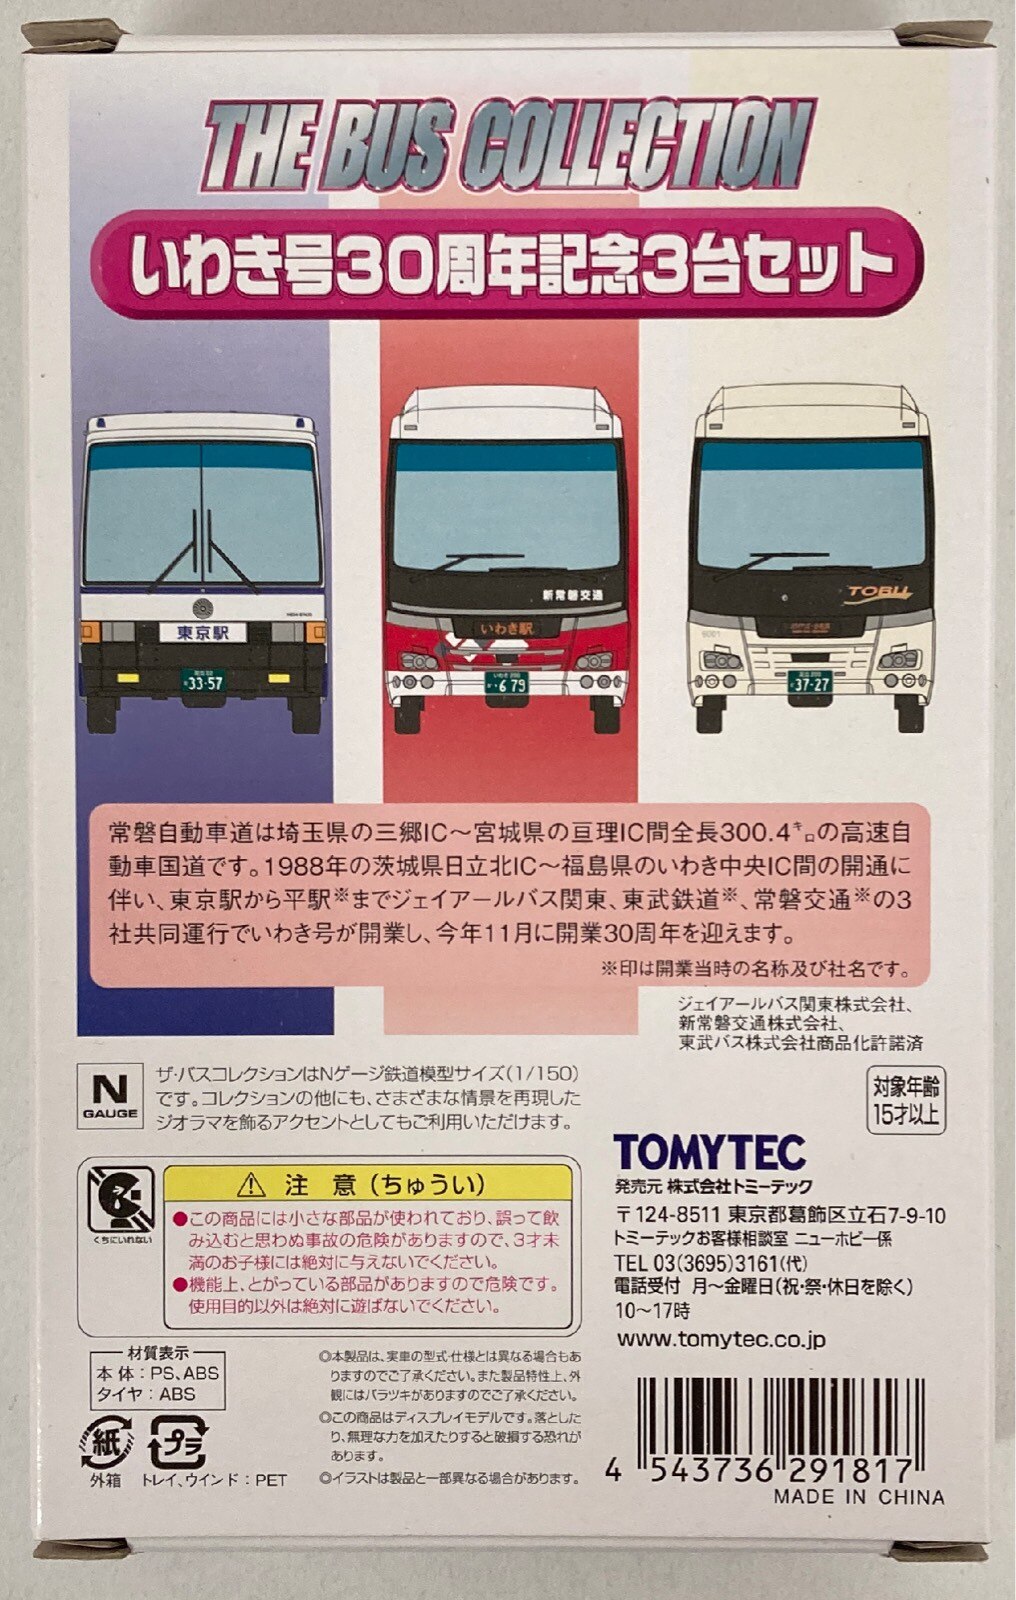 TOMYTEC ザ・バスコレクション いわき号30周年記念 3台セット